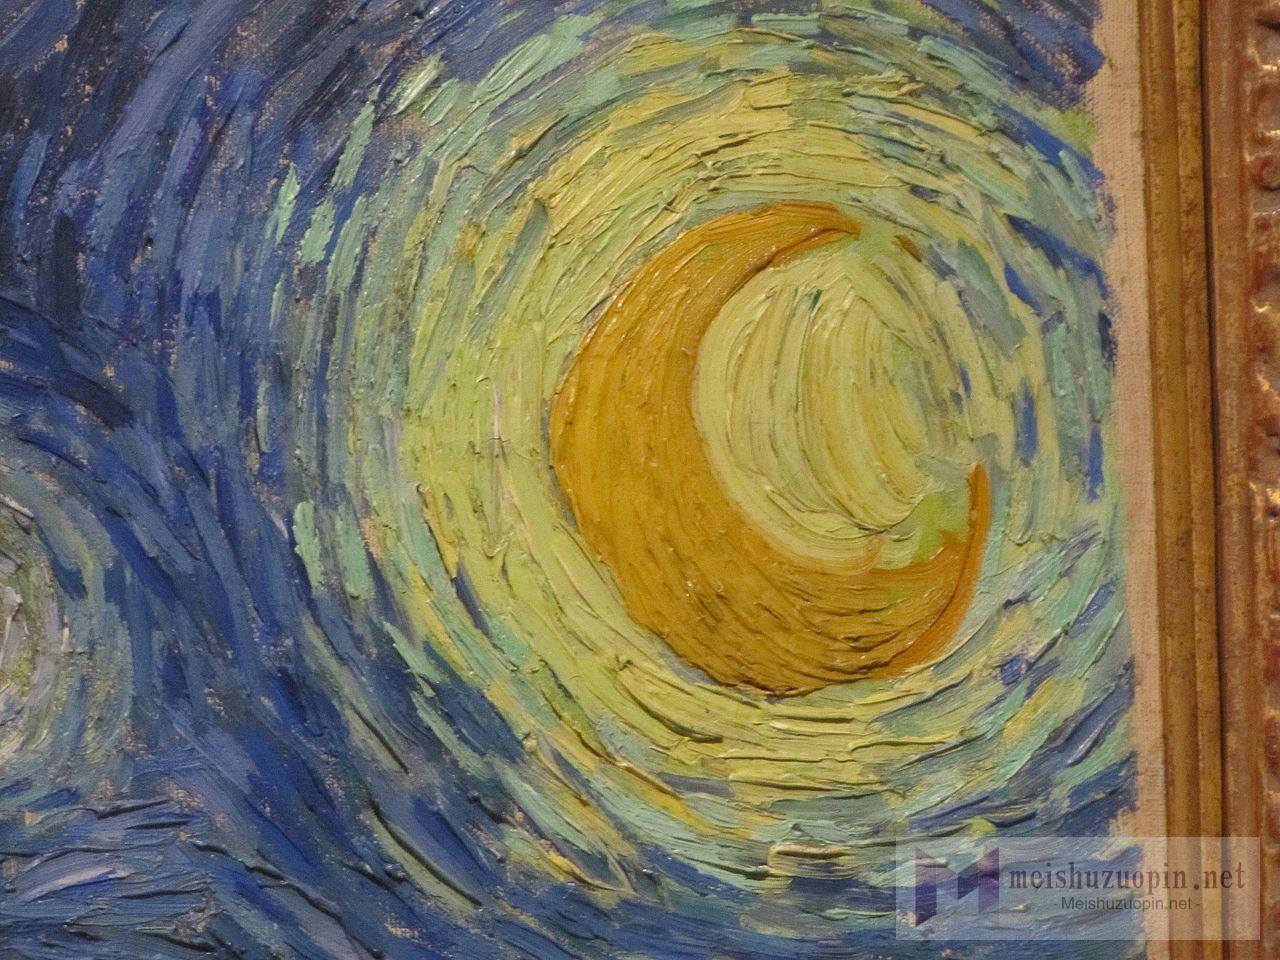 《星月夜》（The Starry Night）